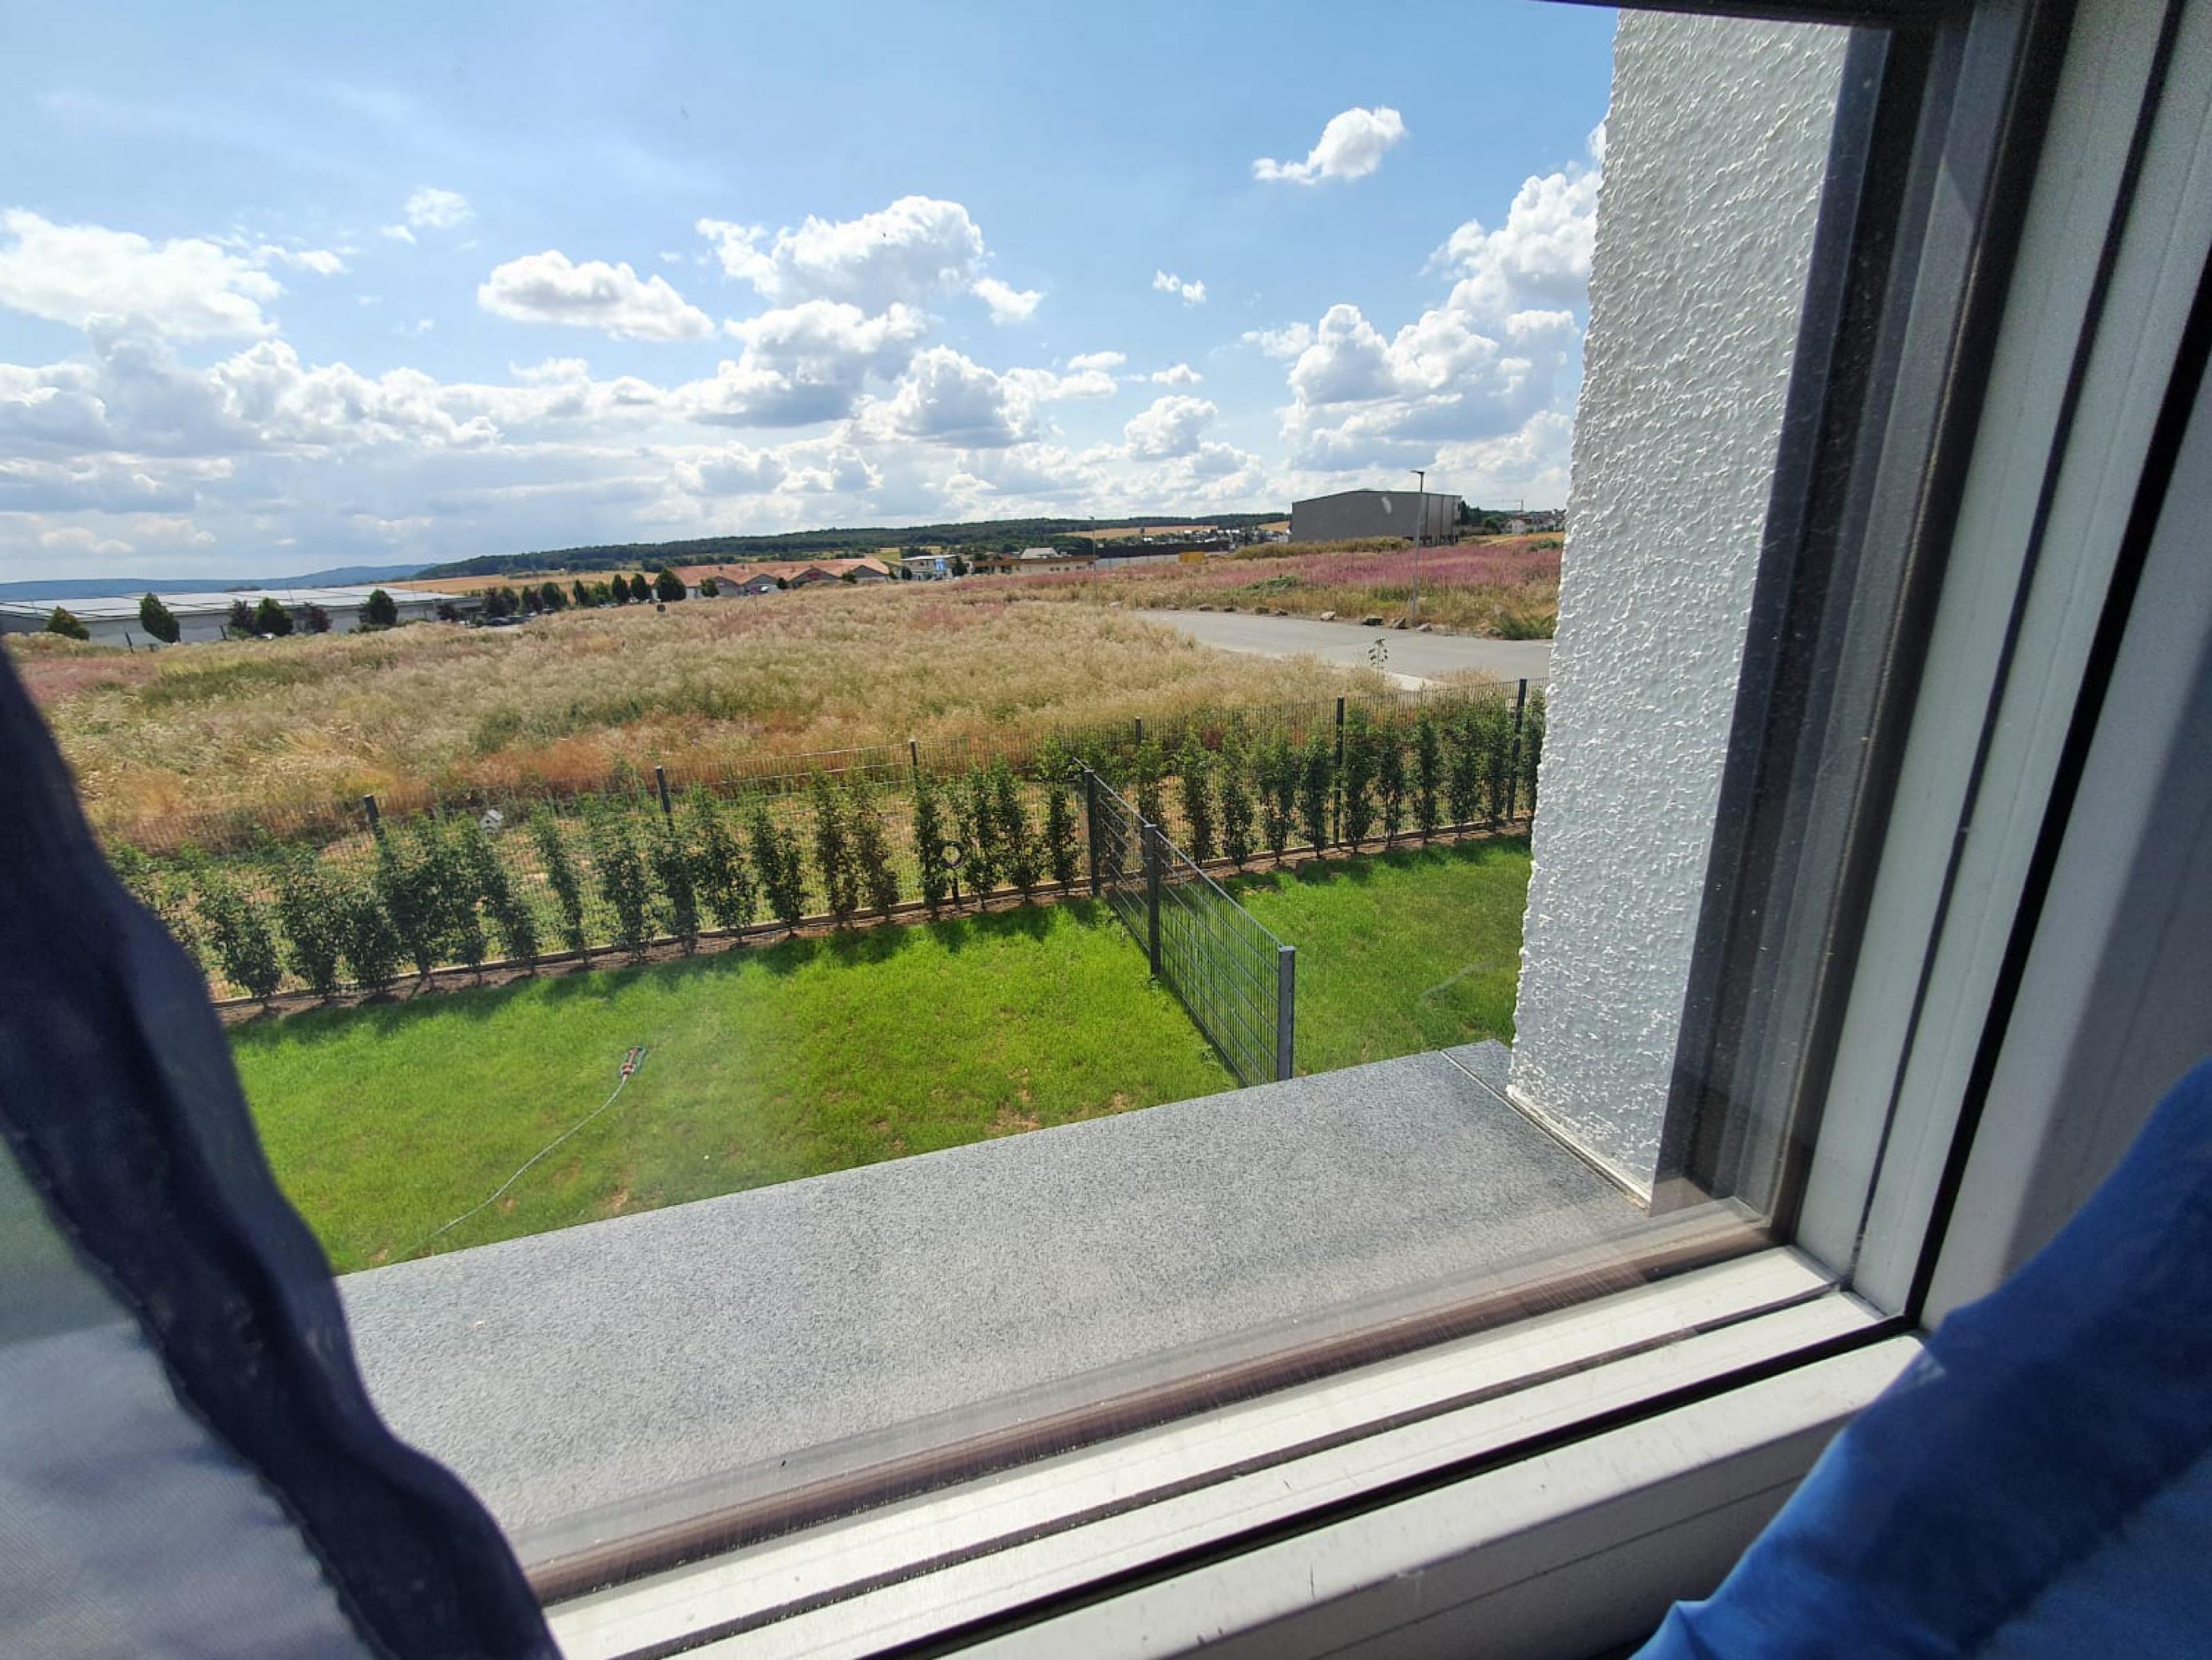 Blick aus dem Fenster von Steffen Lich auf seinen Garten mit kurzem Rasen und der angrenzenden wilden Brache vor ihrer Zerstörung.